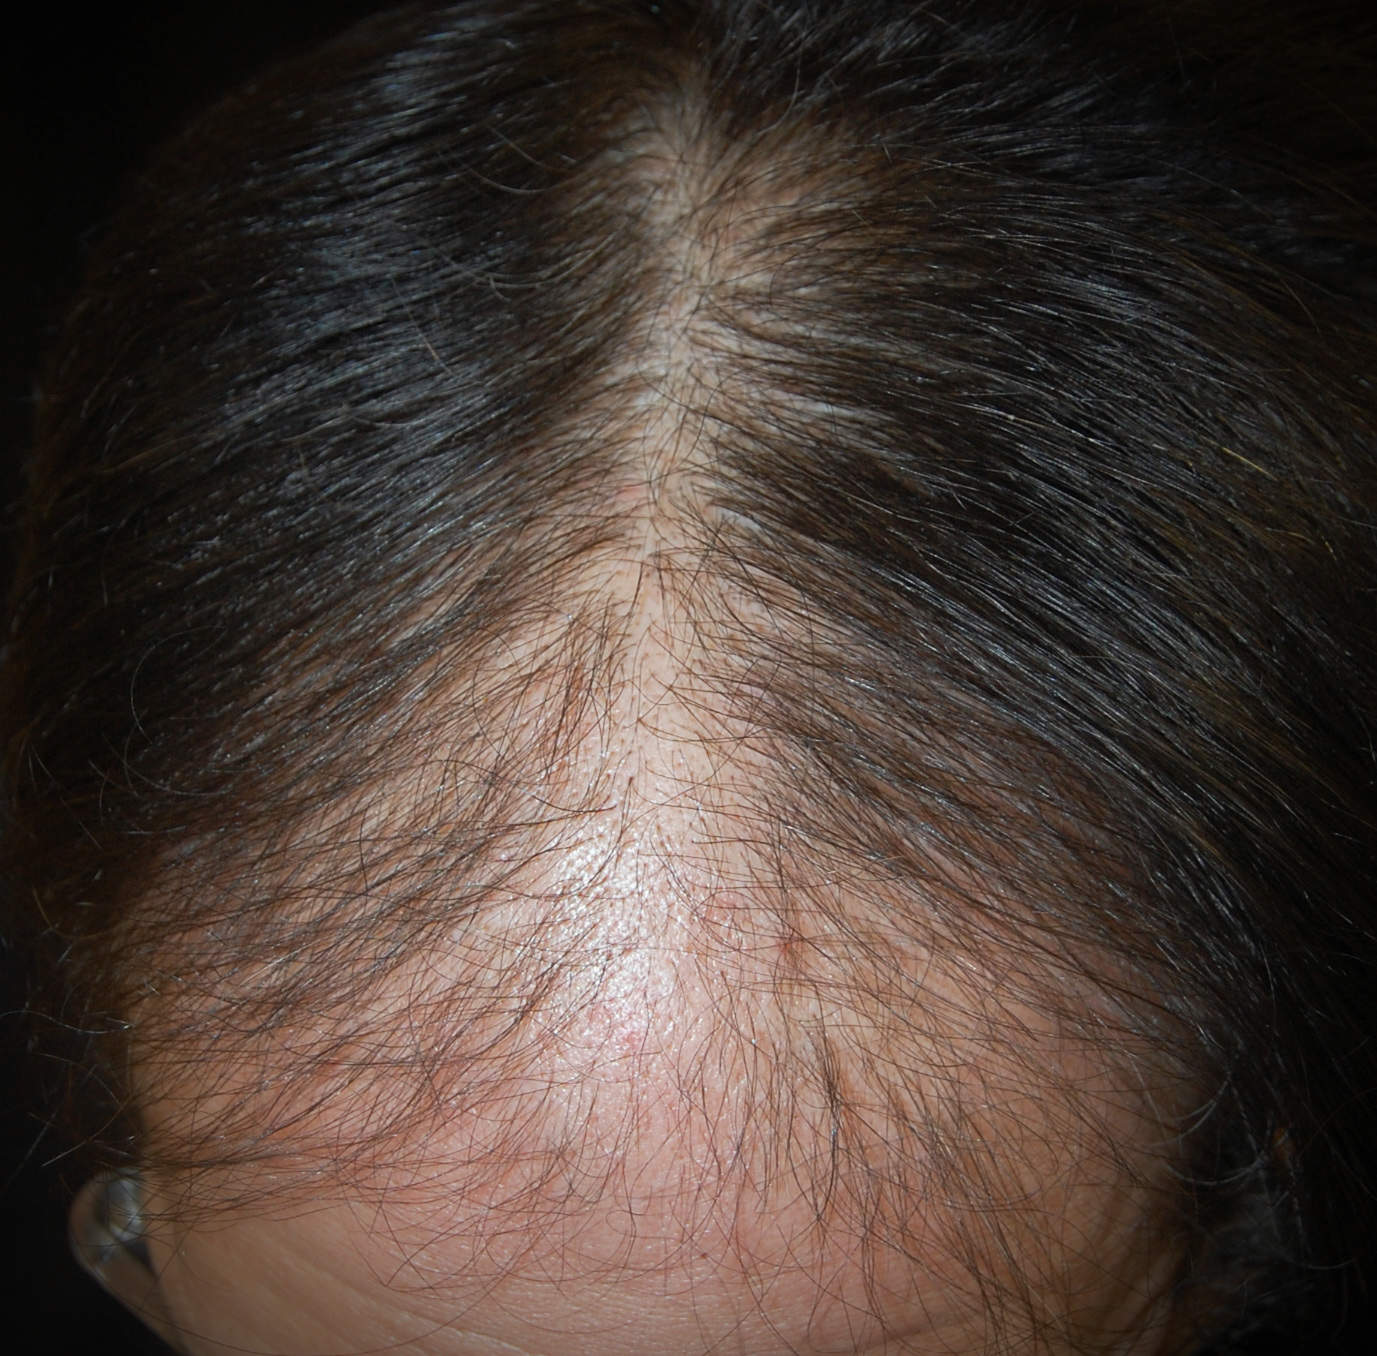 Alopecia androgenetica maschile: a volte è colpita la zona anteriore del capo, e il diradamento dei capelli permette di vedere la cute